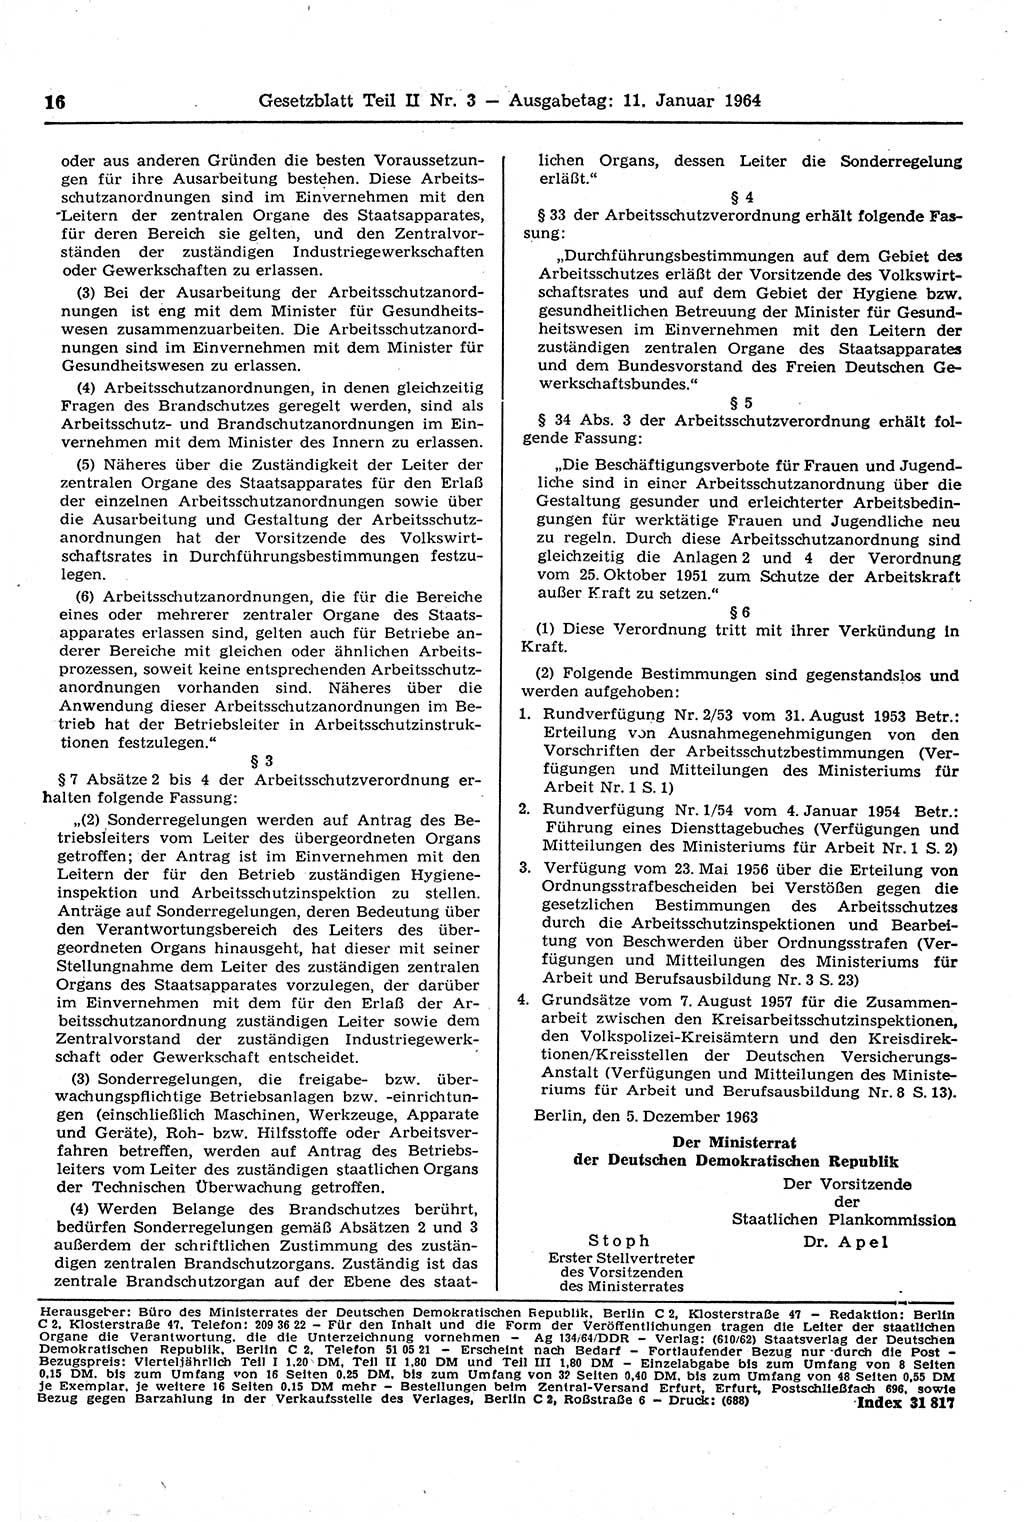 Gesetzblatt (GBl.) der Deutschen Demokratischen Republik (DDR) Teil ⅠⅠ 1964, Seite 16 (GBl. DDR ⅠⅠ 1964, S. 16)